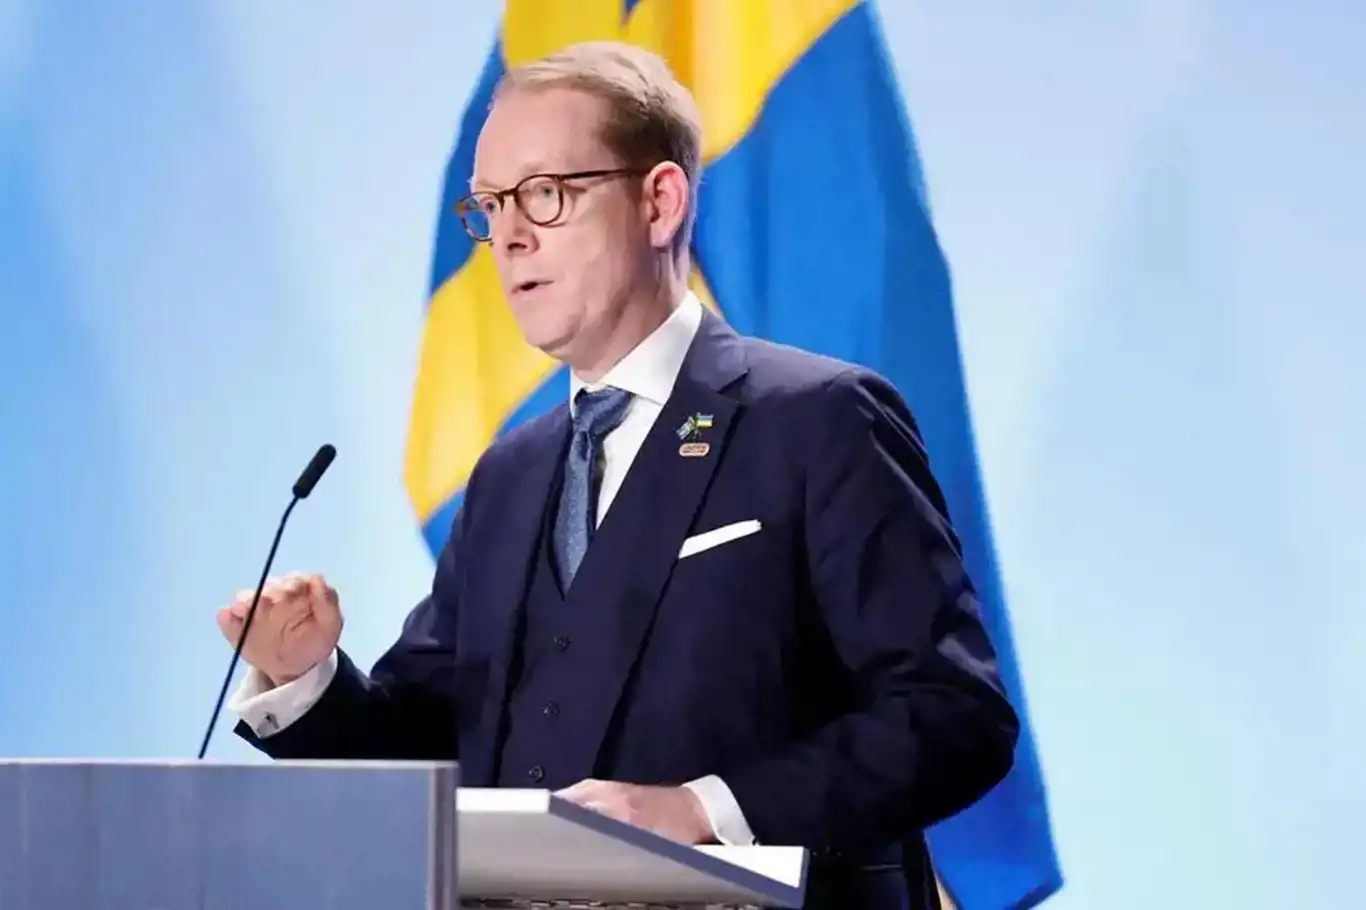 Sweden and Türkiye to hold meeting on Sweden's delayed NATO bid